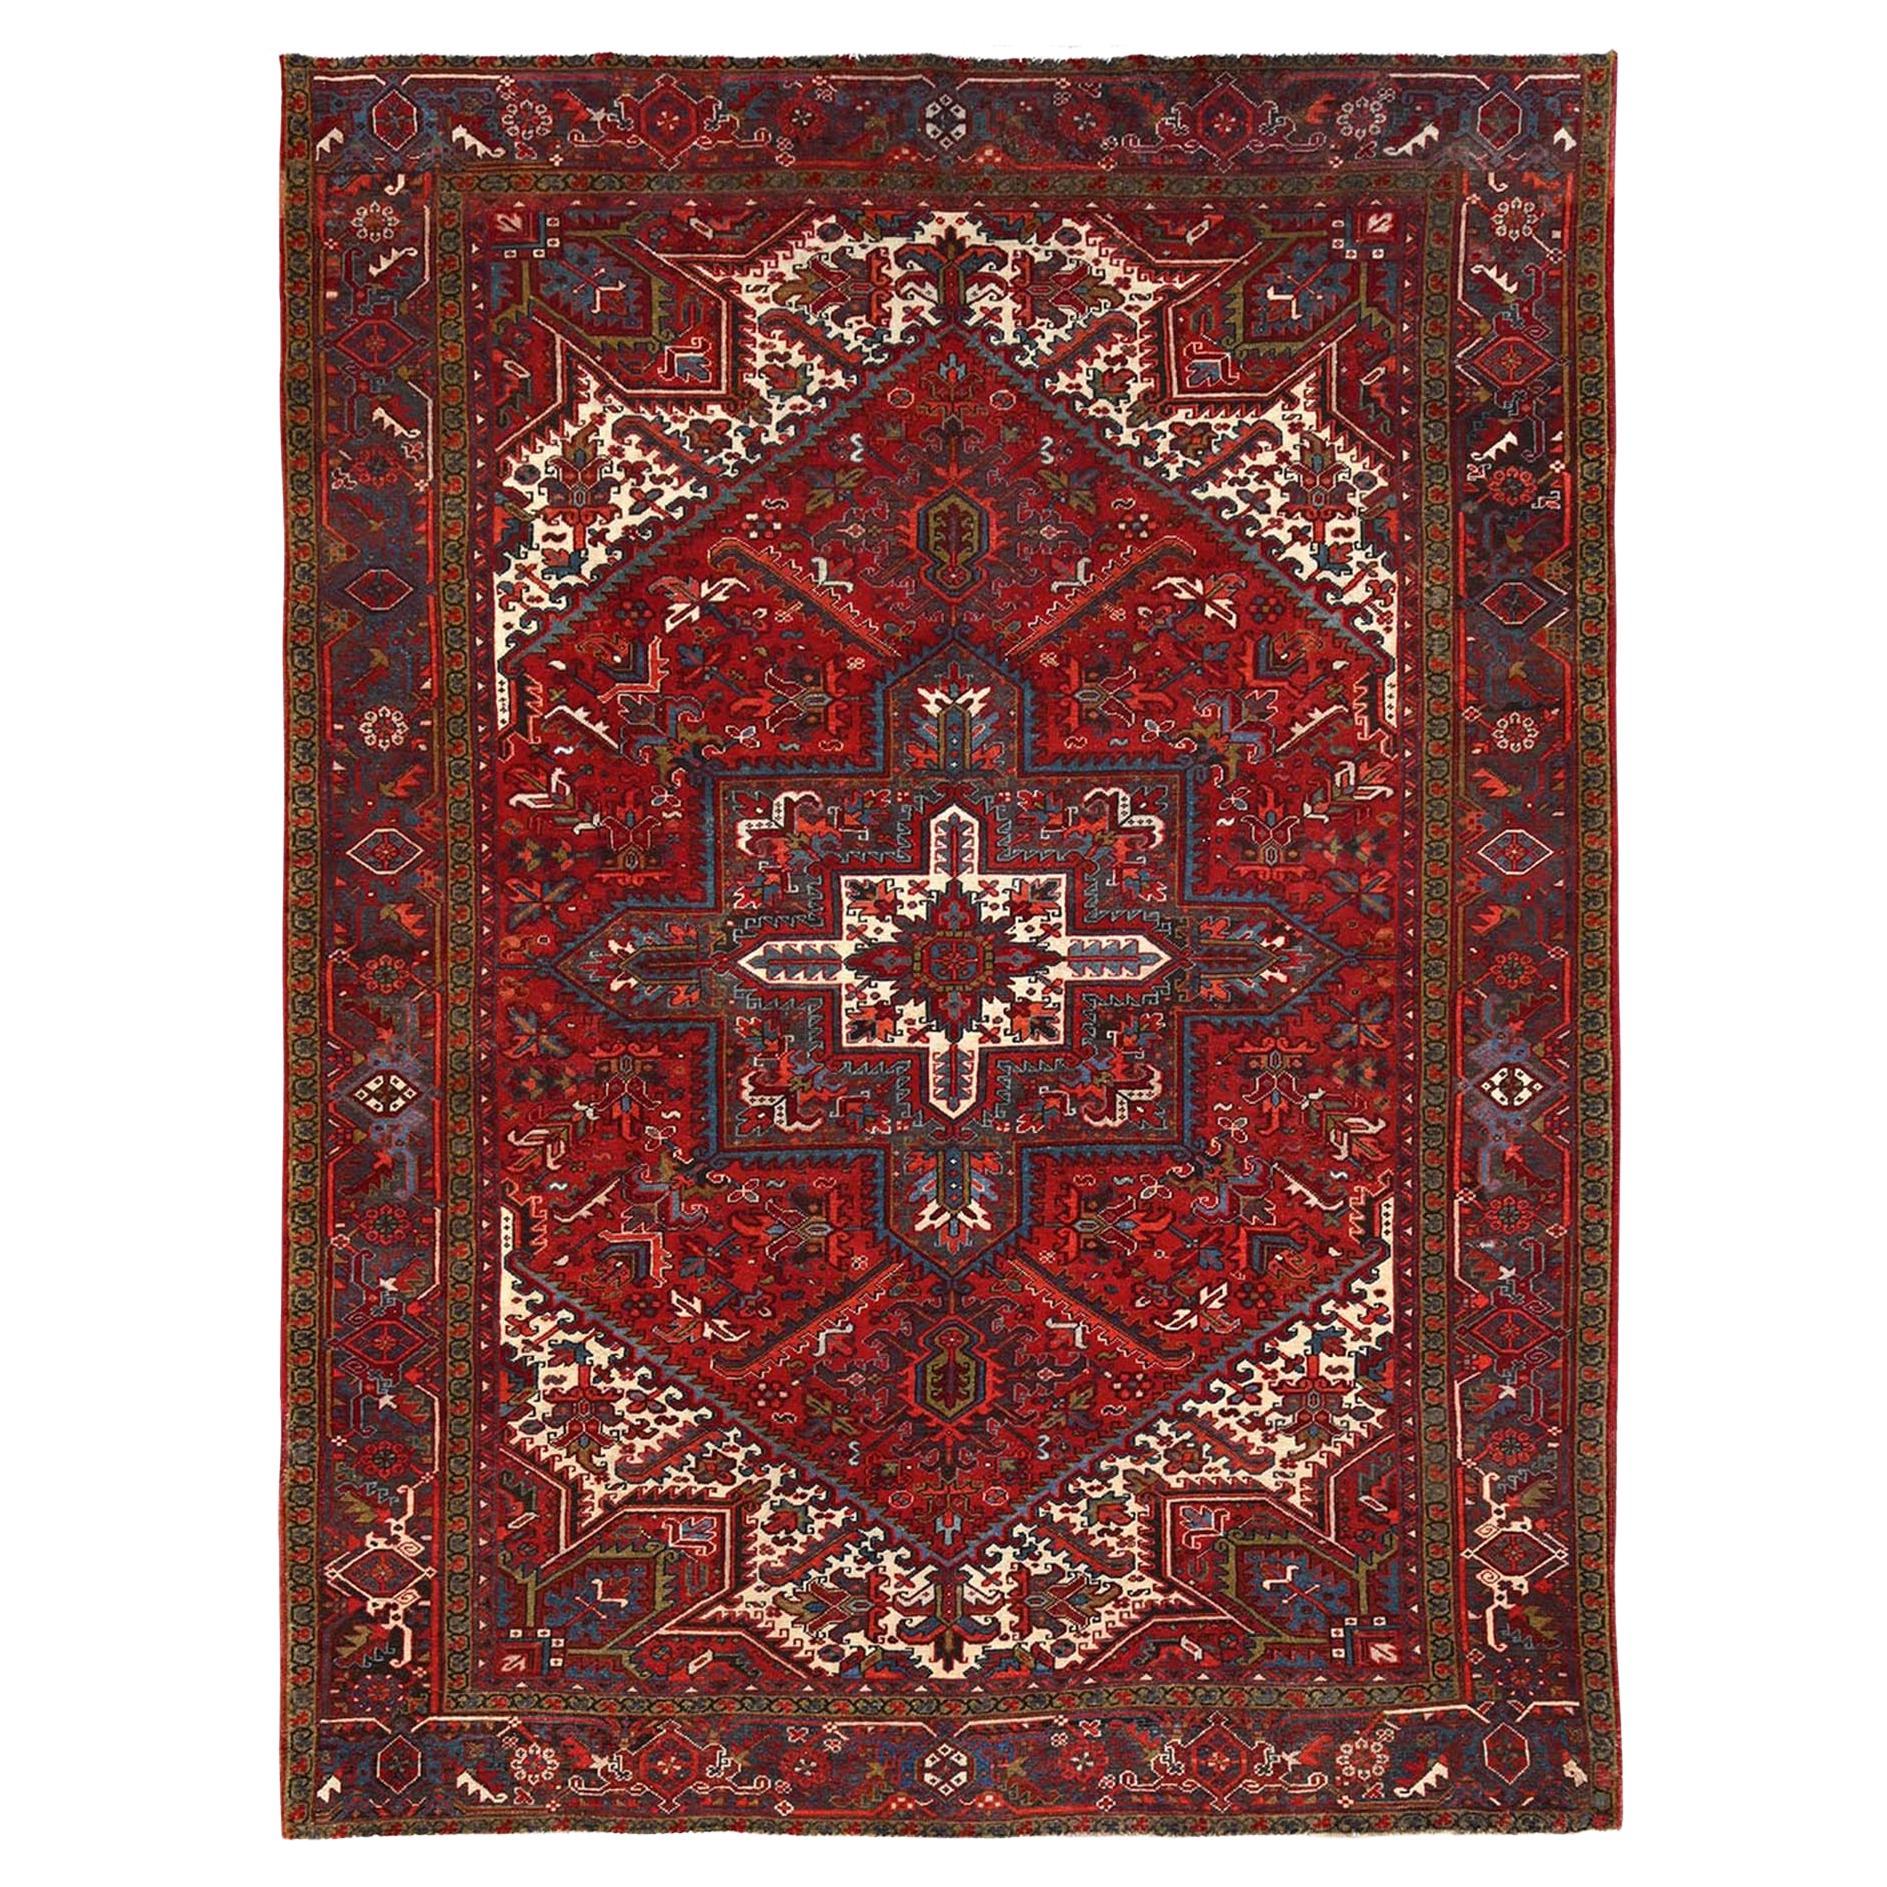 Roter handgeknüpfter persischer Heriz-Teppich aus reiner Wolle im Used-Look